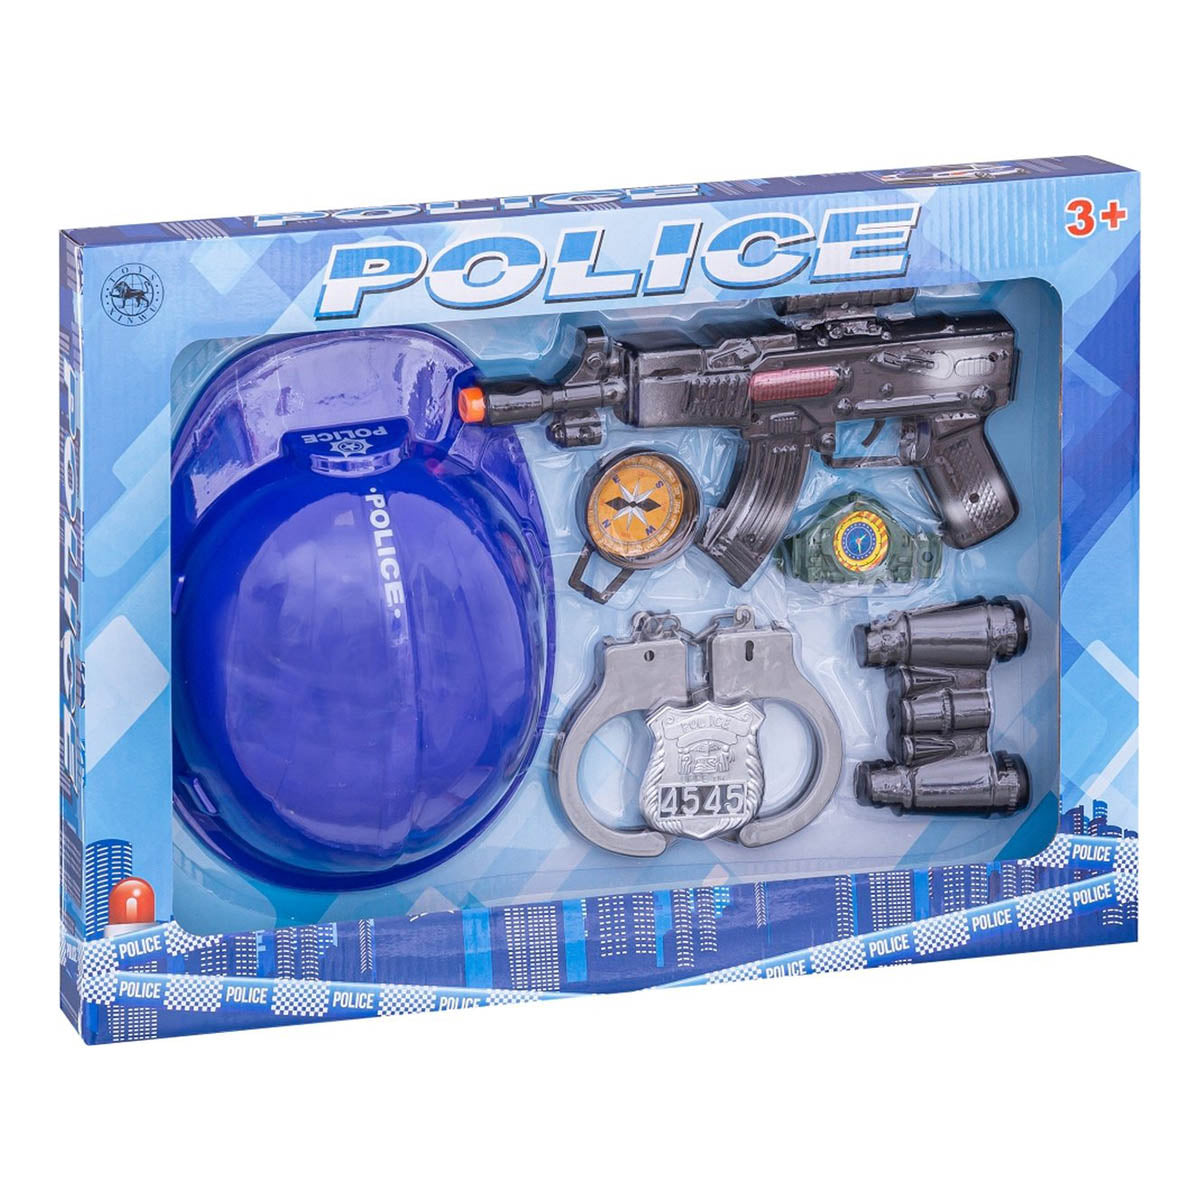 Ariko Luxe Politie speelset | 7-delig | Politiehelm | Handboeien | Politiepenning | Kompass | Speelmitrailleur | Verrekijker